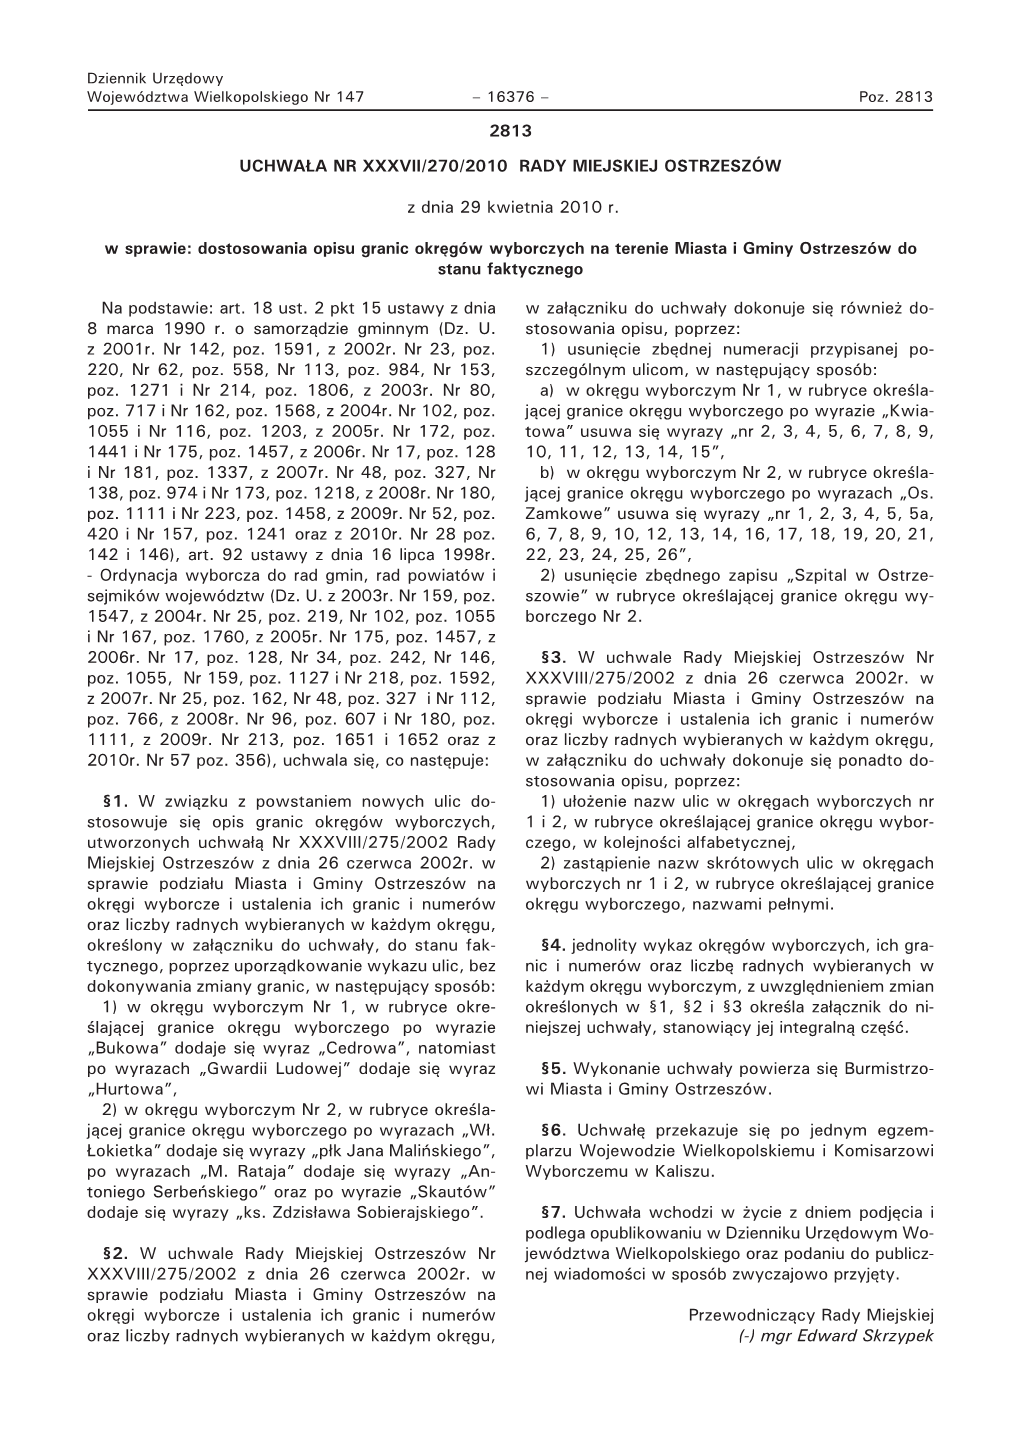 Dziennik Nr 147-2010 Pozycja 2813.Pdf